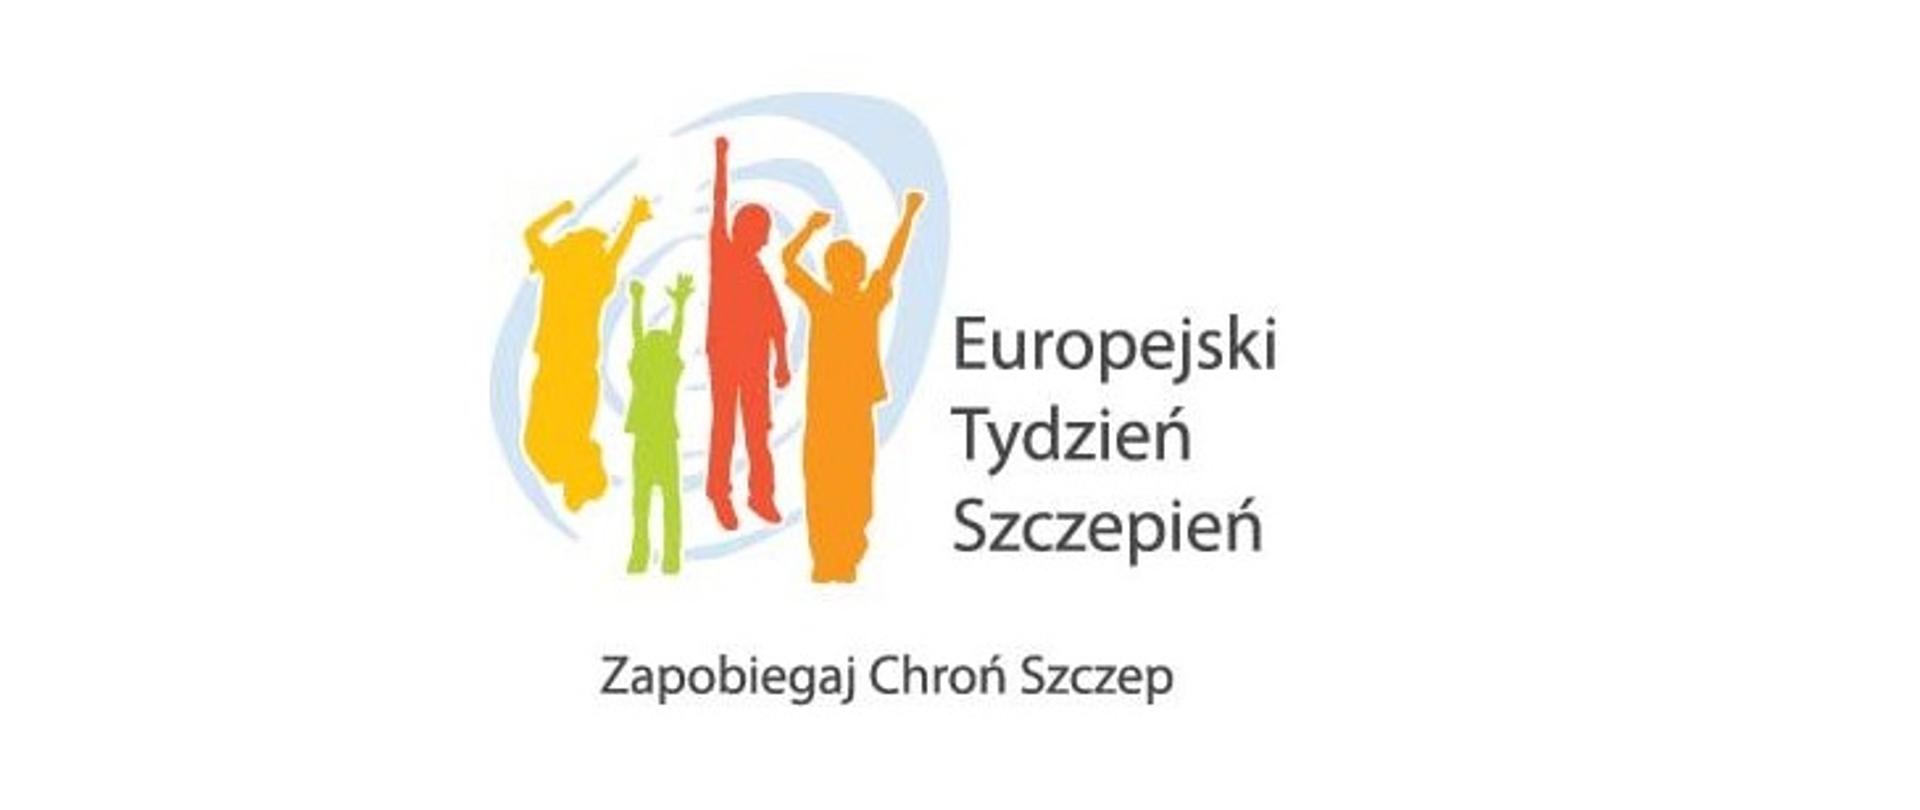 Europejski Tydzień Szczepień 2022